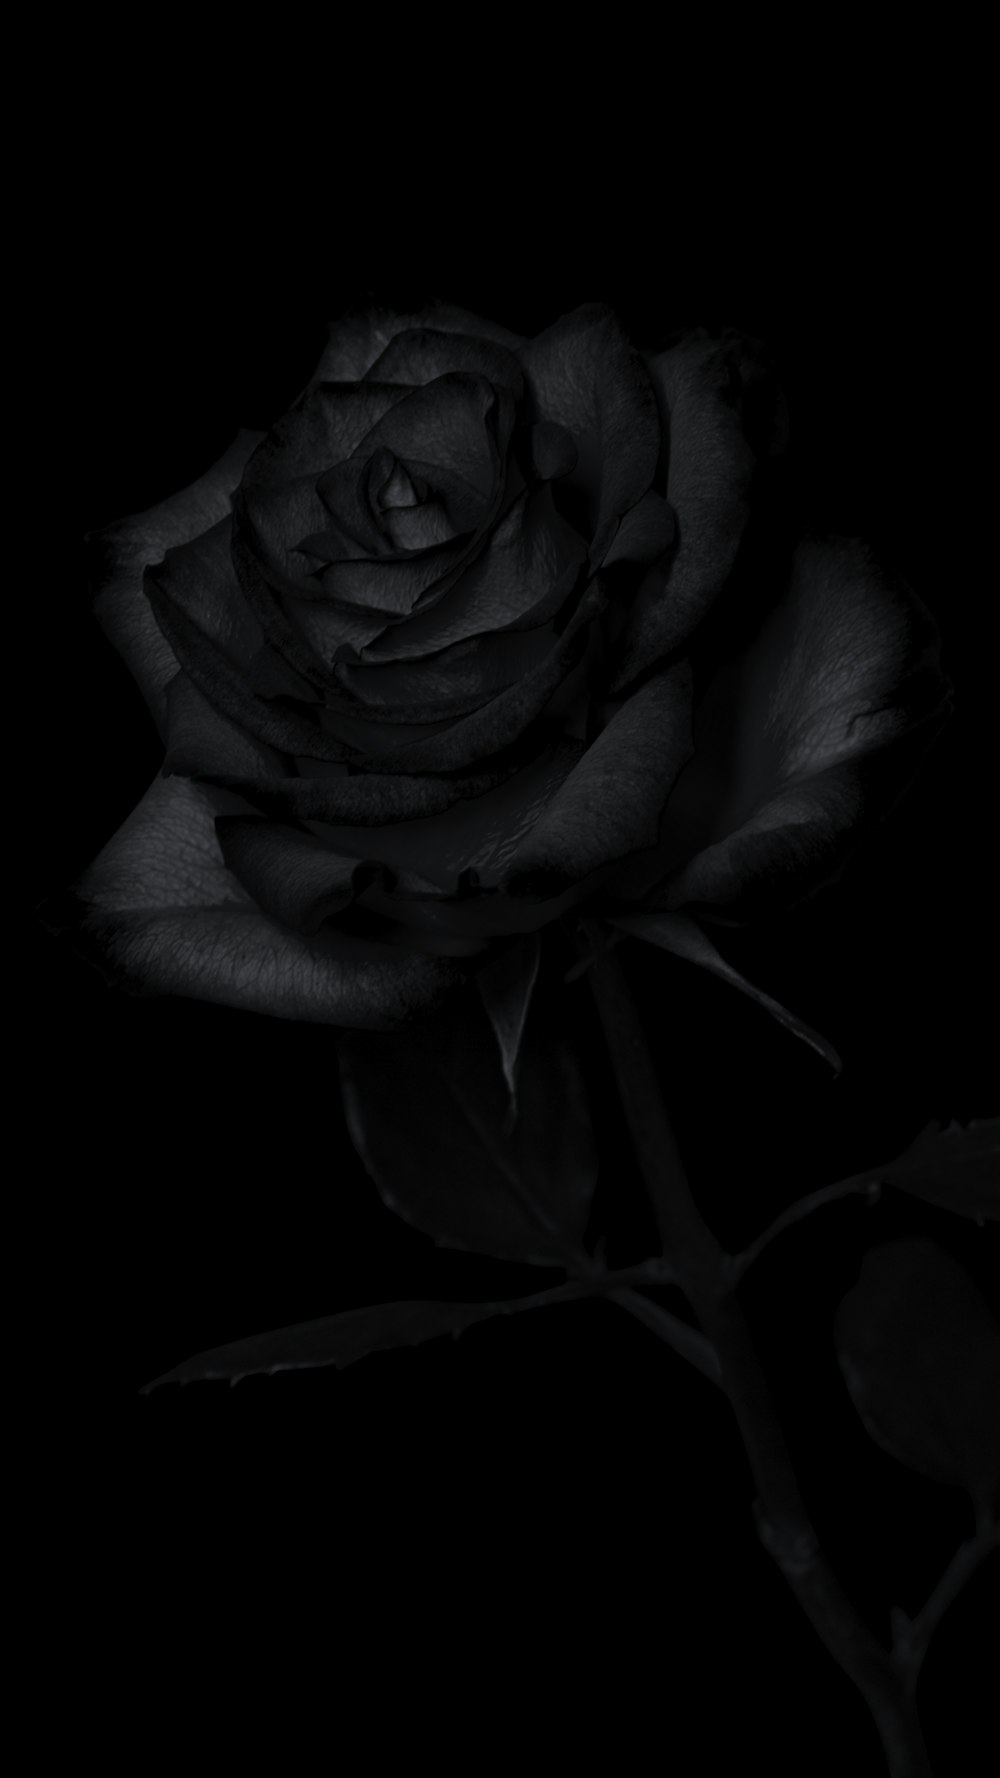 Những chiếc hoa hồng đen đầy bí ẩn, tuyệt đẹp và lạ lẫm sẽ khiến bạn thực sự choáng ngợp. Hãy xem hình ảnh để tìm hiểu thêm về thế giới hoa hồng đen này.